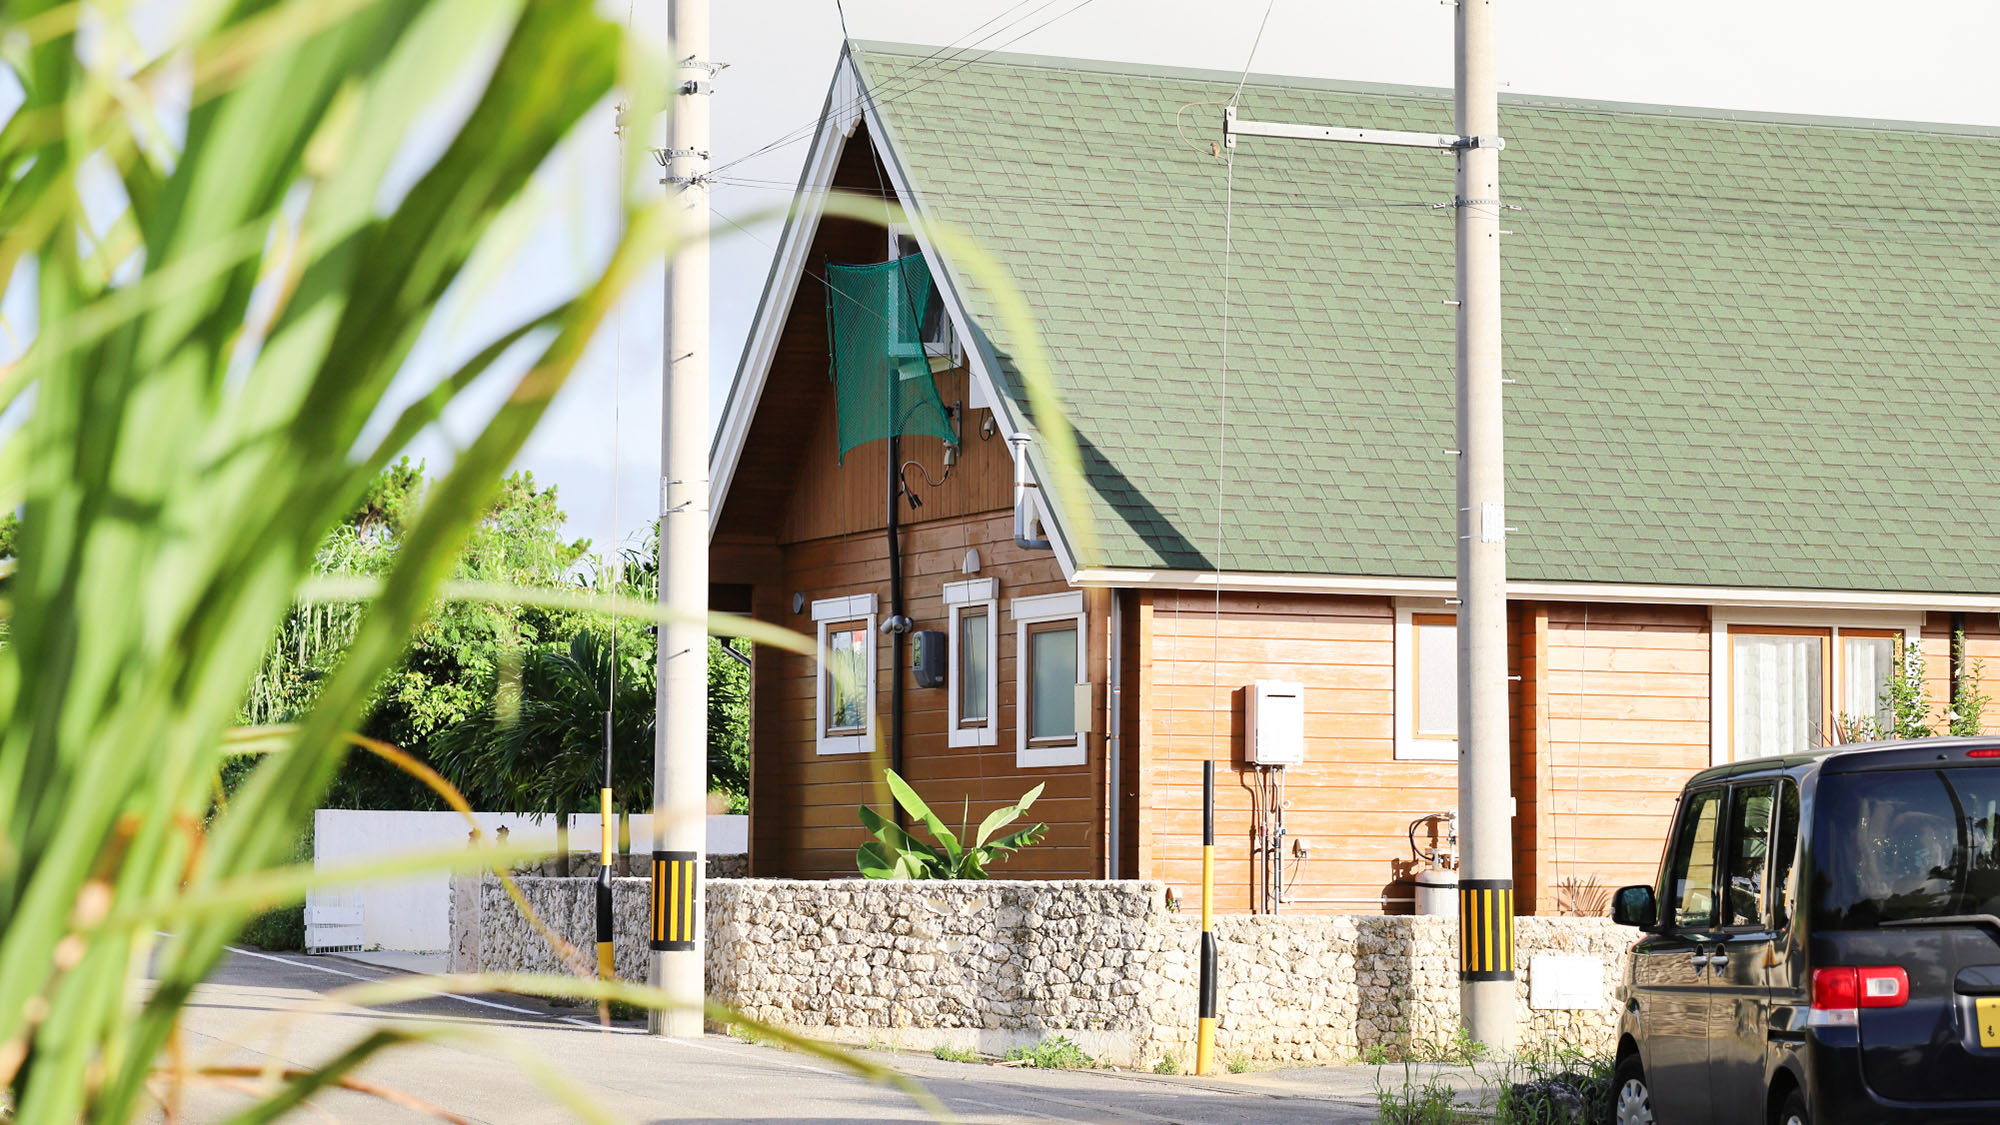 ・【外観】緑の屋根が特徴の一棟貸しログハウス。5名様までご宿泊可能です